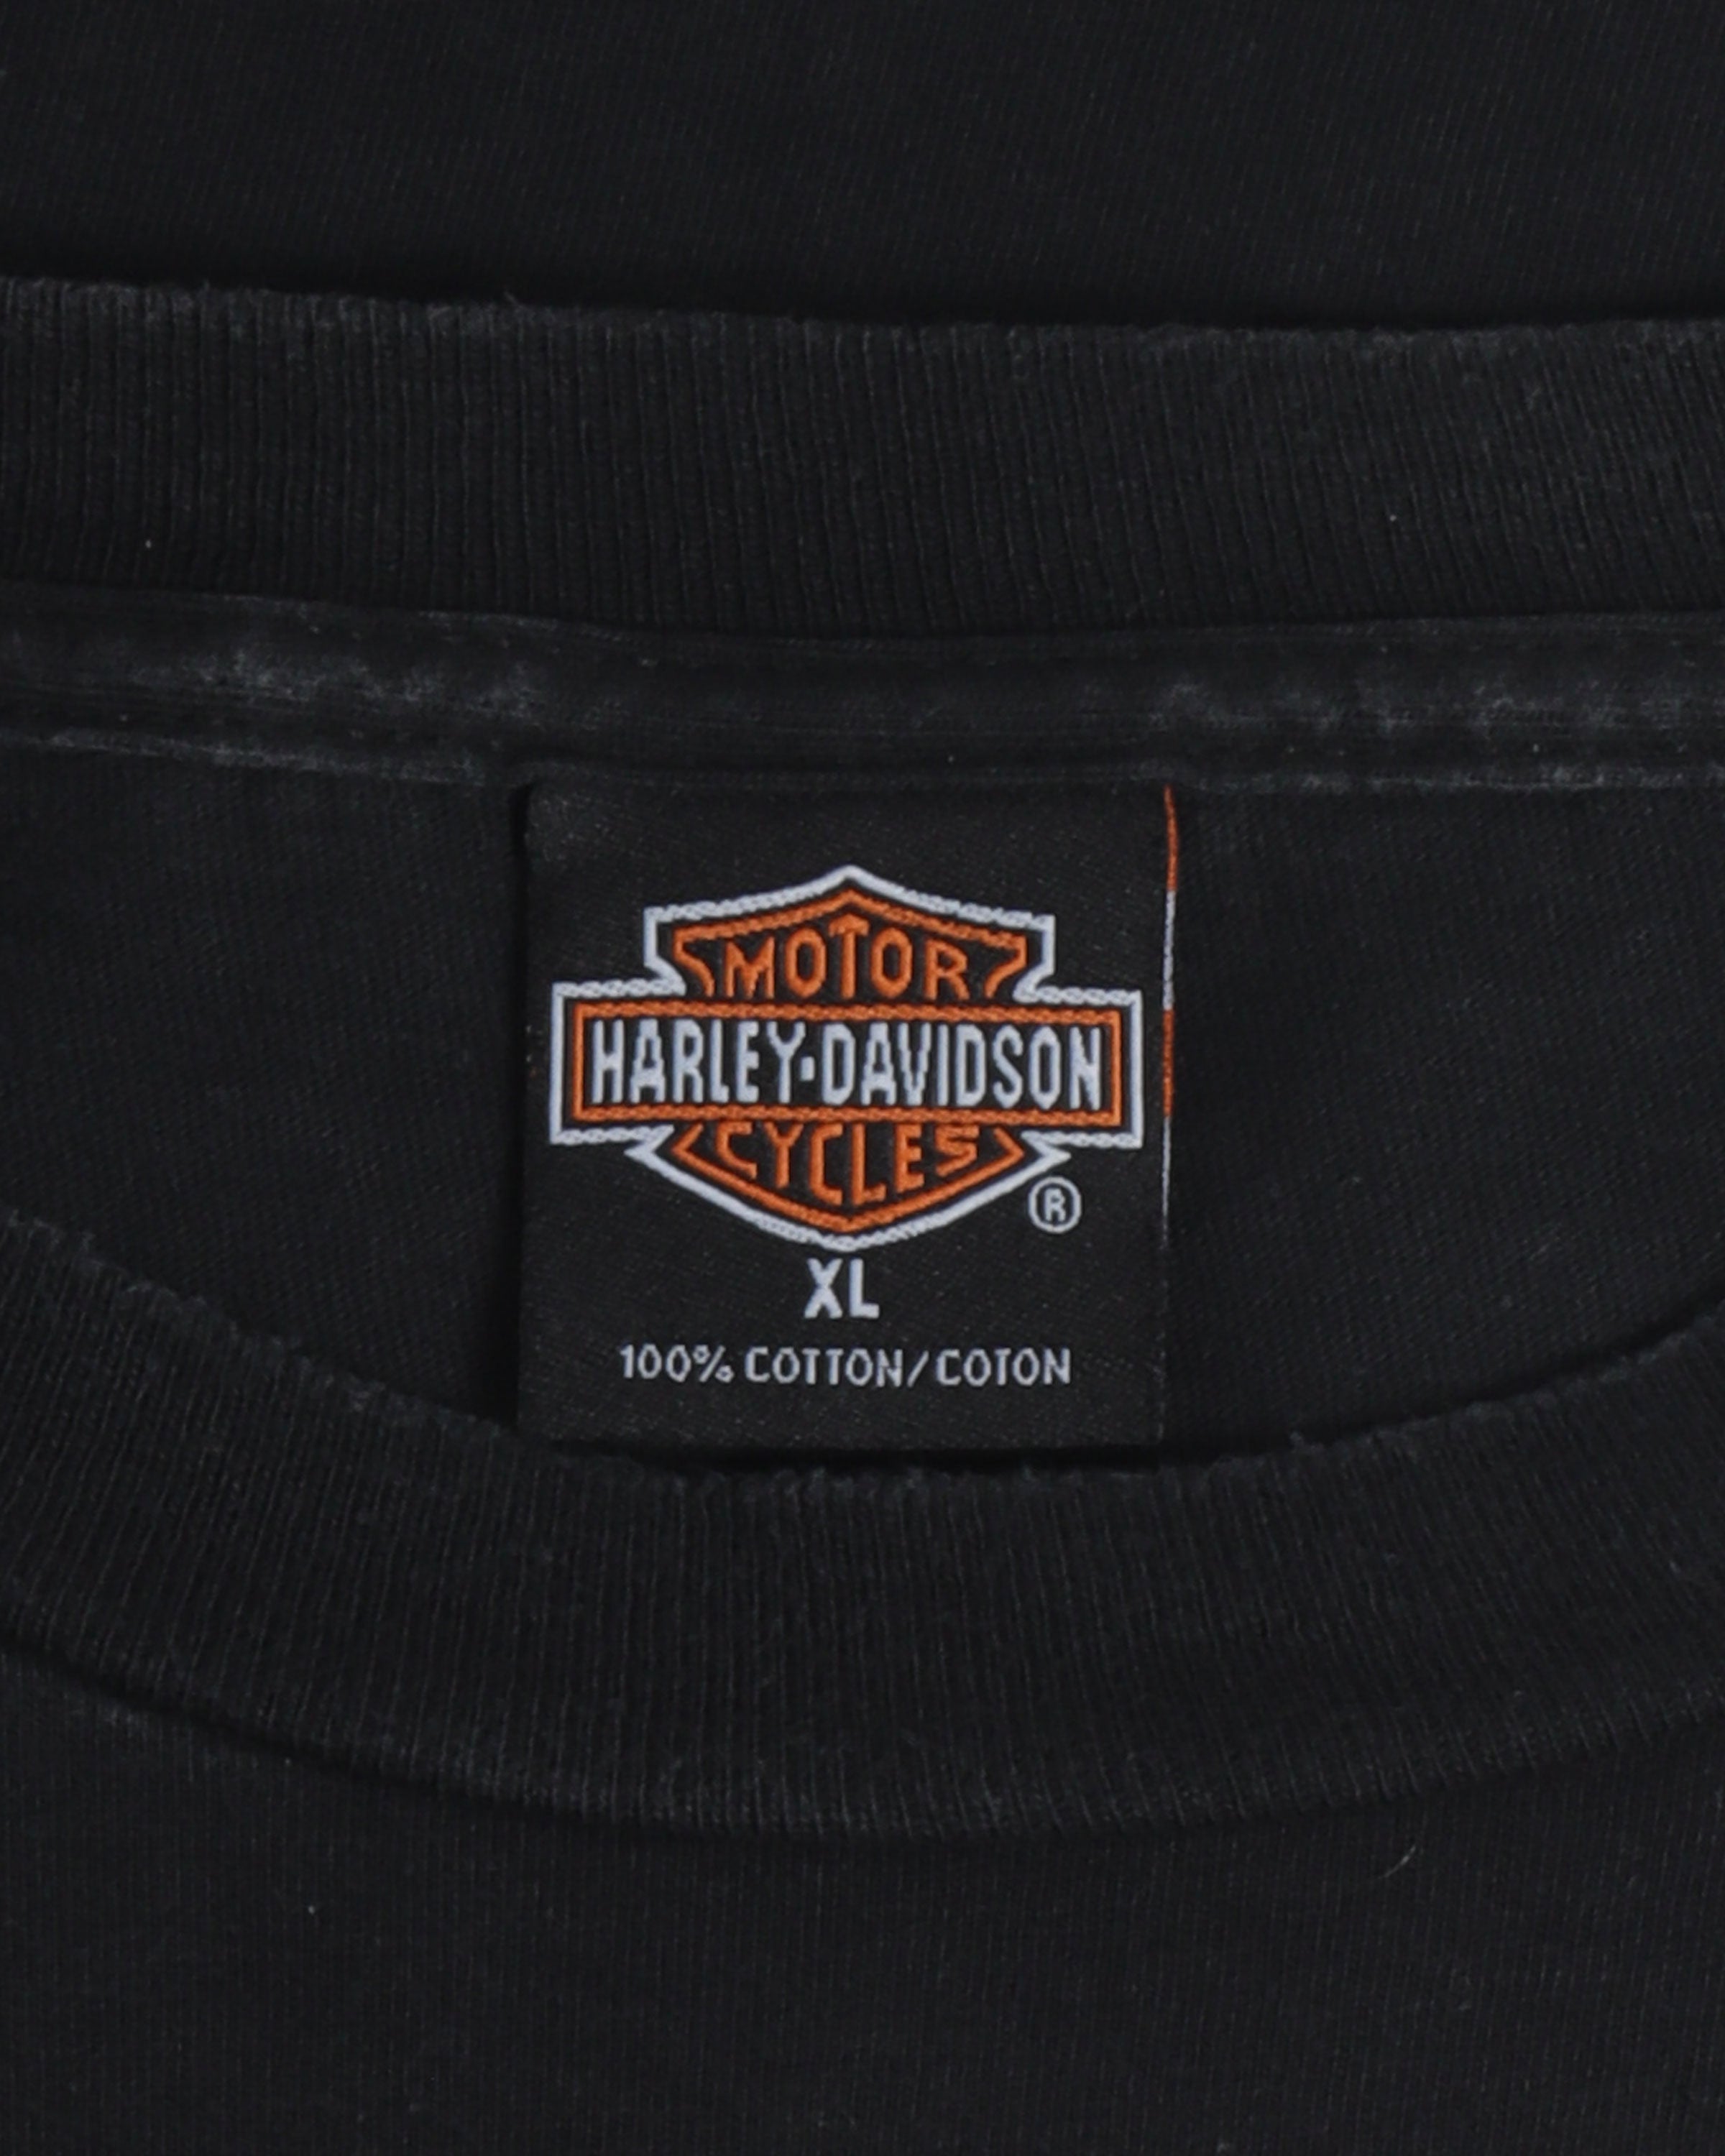 Harley Davidson Fat Boy T-Shirt